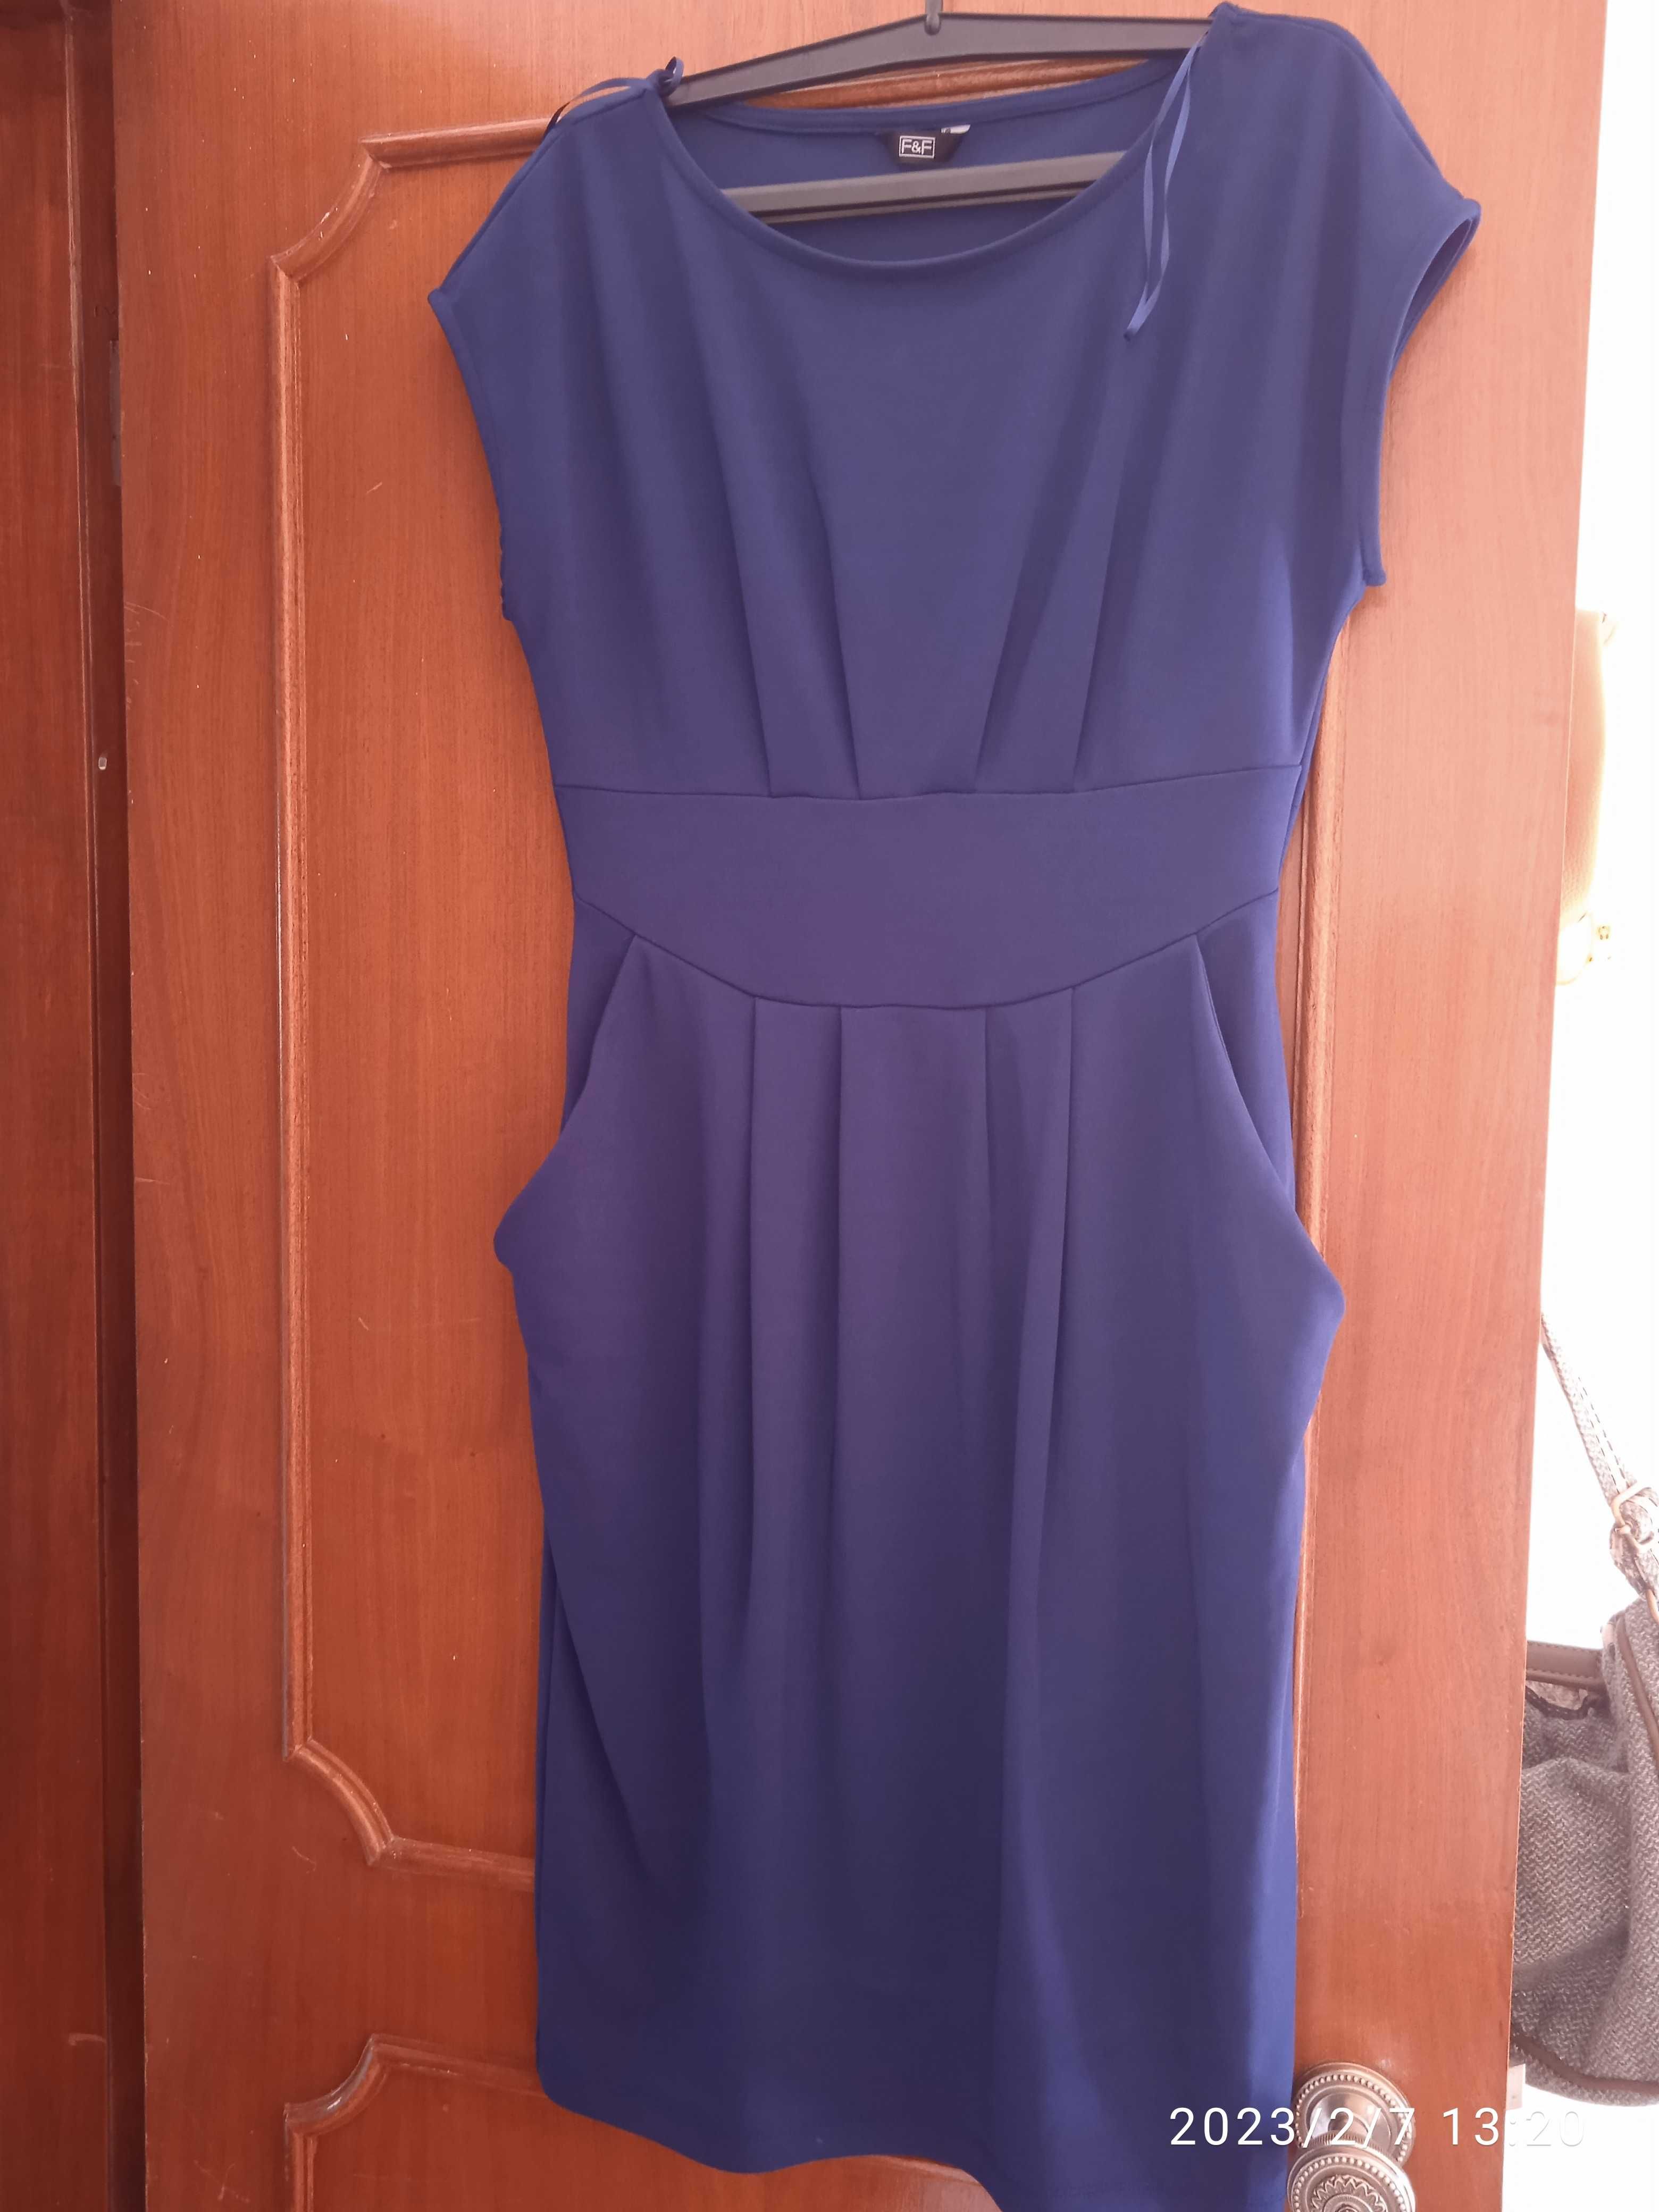 Vendo vestido azul + oferta camisola de Verão